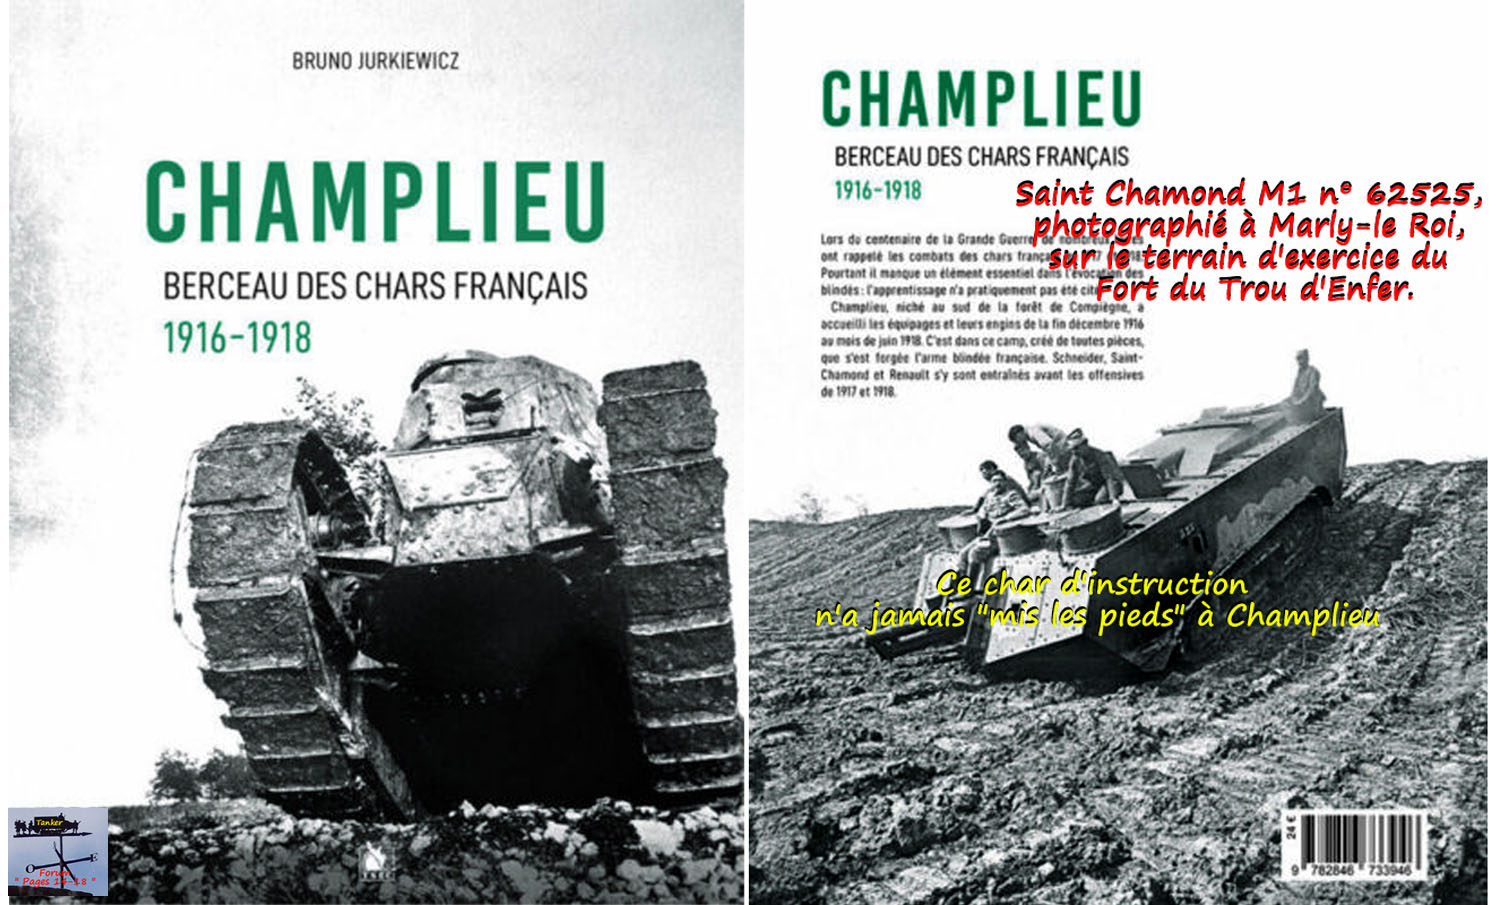 Champlieu 01a1.jpg